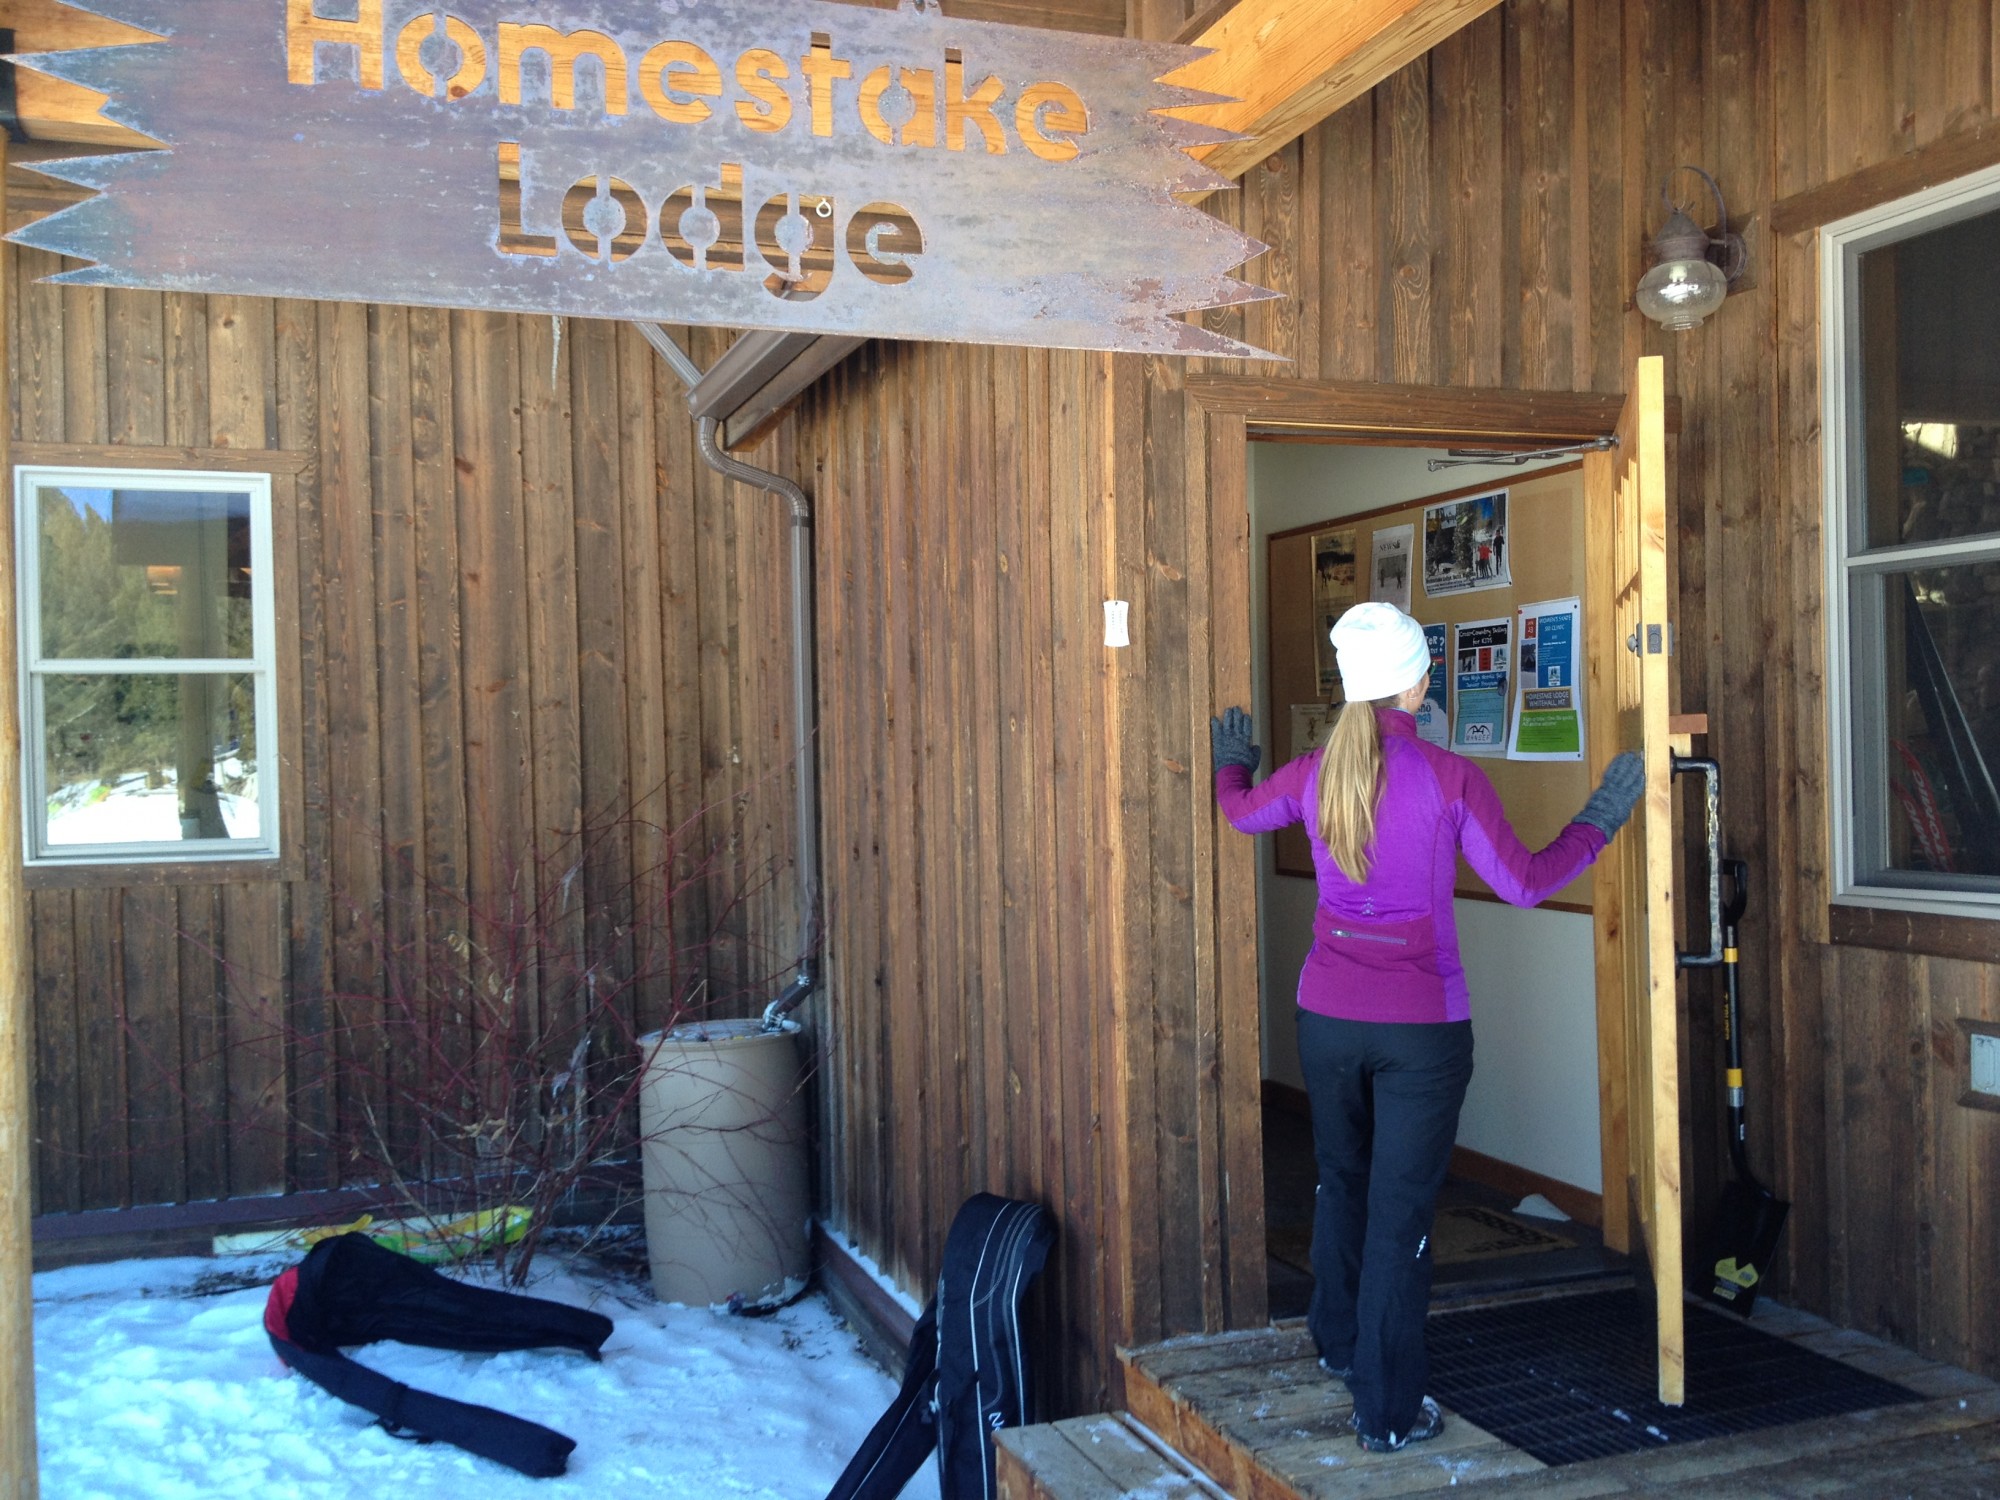 Homestake Lodge, Montana